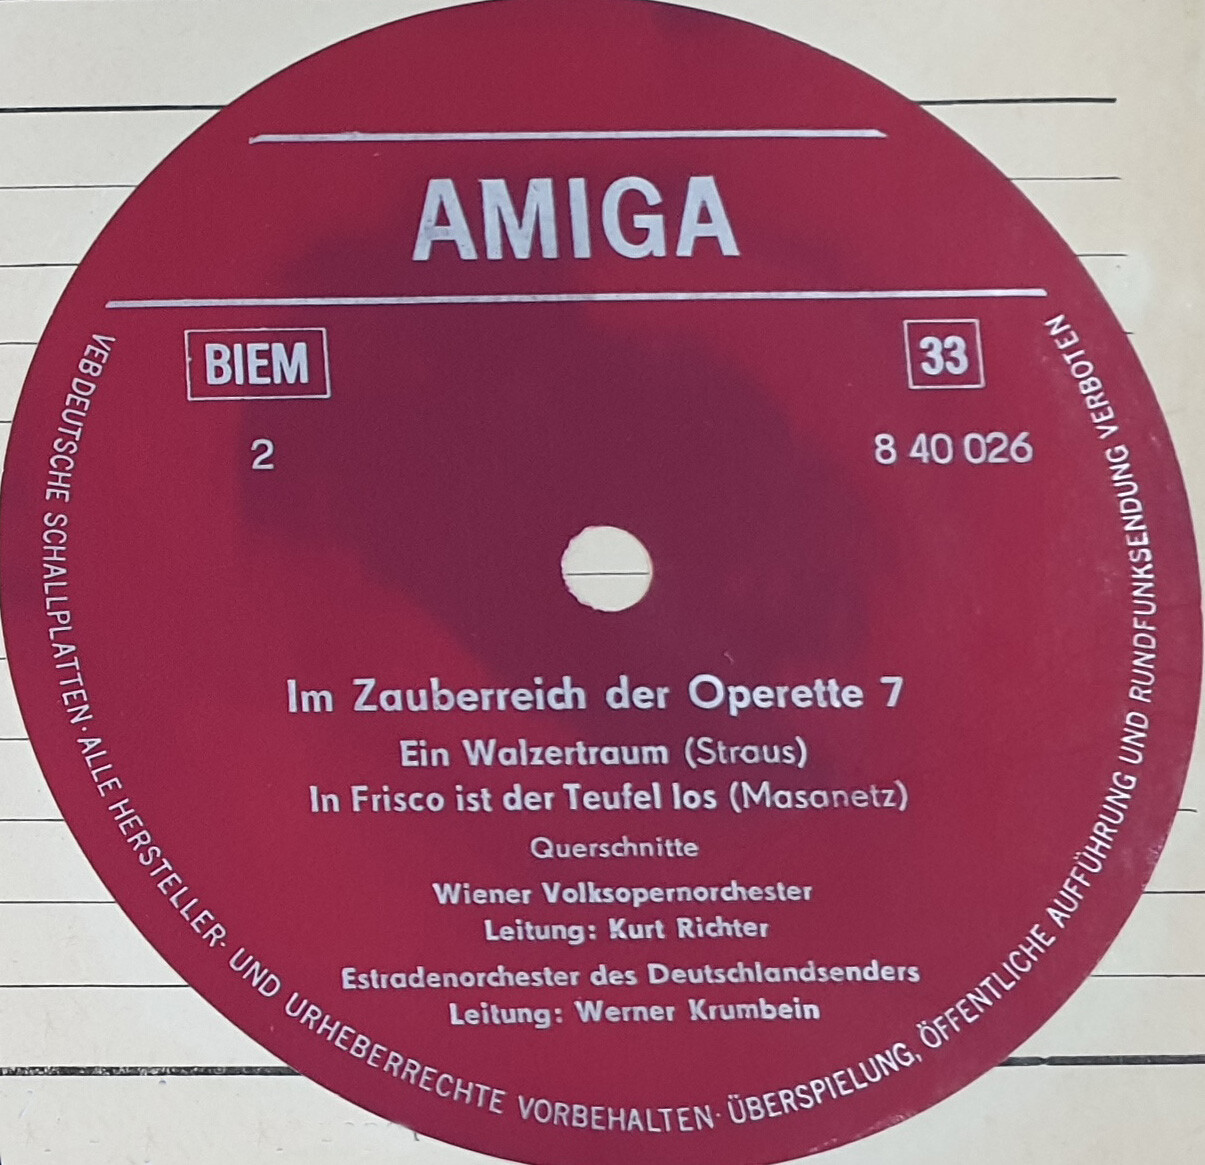 Im Zauberreich der Operette 7 [по заказу немецкой фирмы AMIGA 8 40 026]